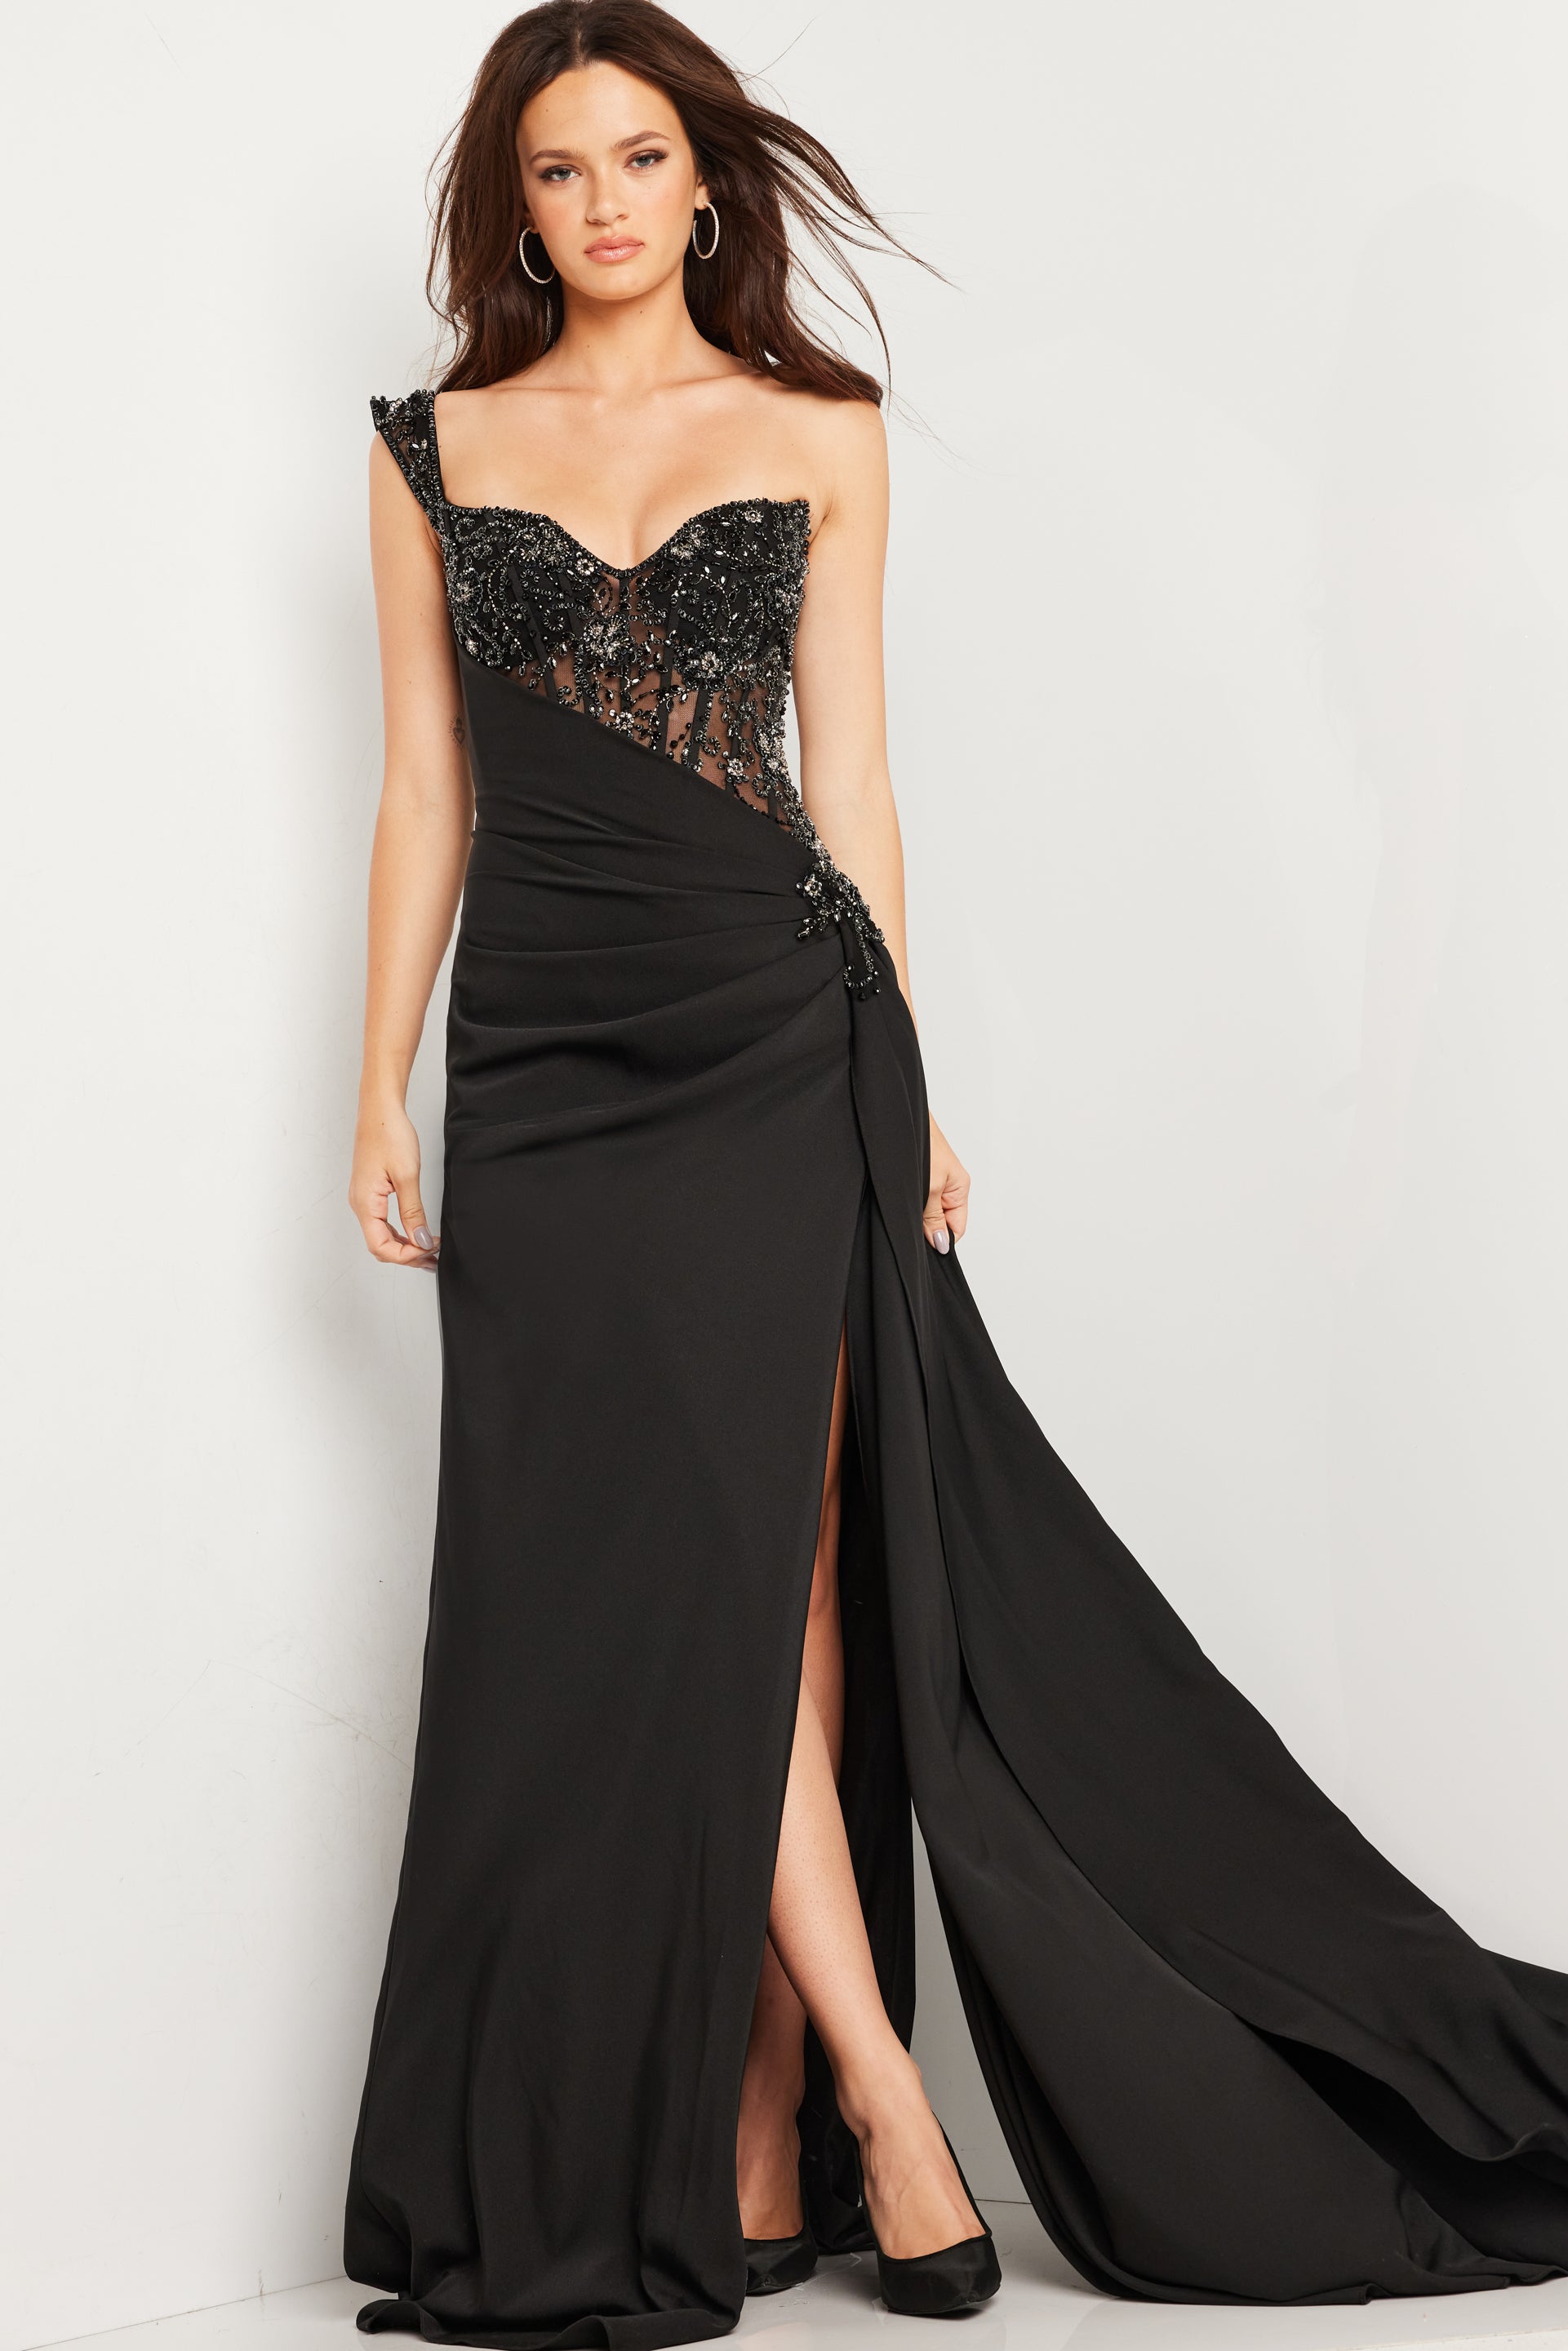 Black Jovani 37094 Long Formal Prom Dress for $945.0 – The Dress Outlet